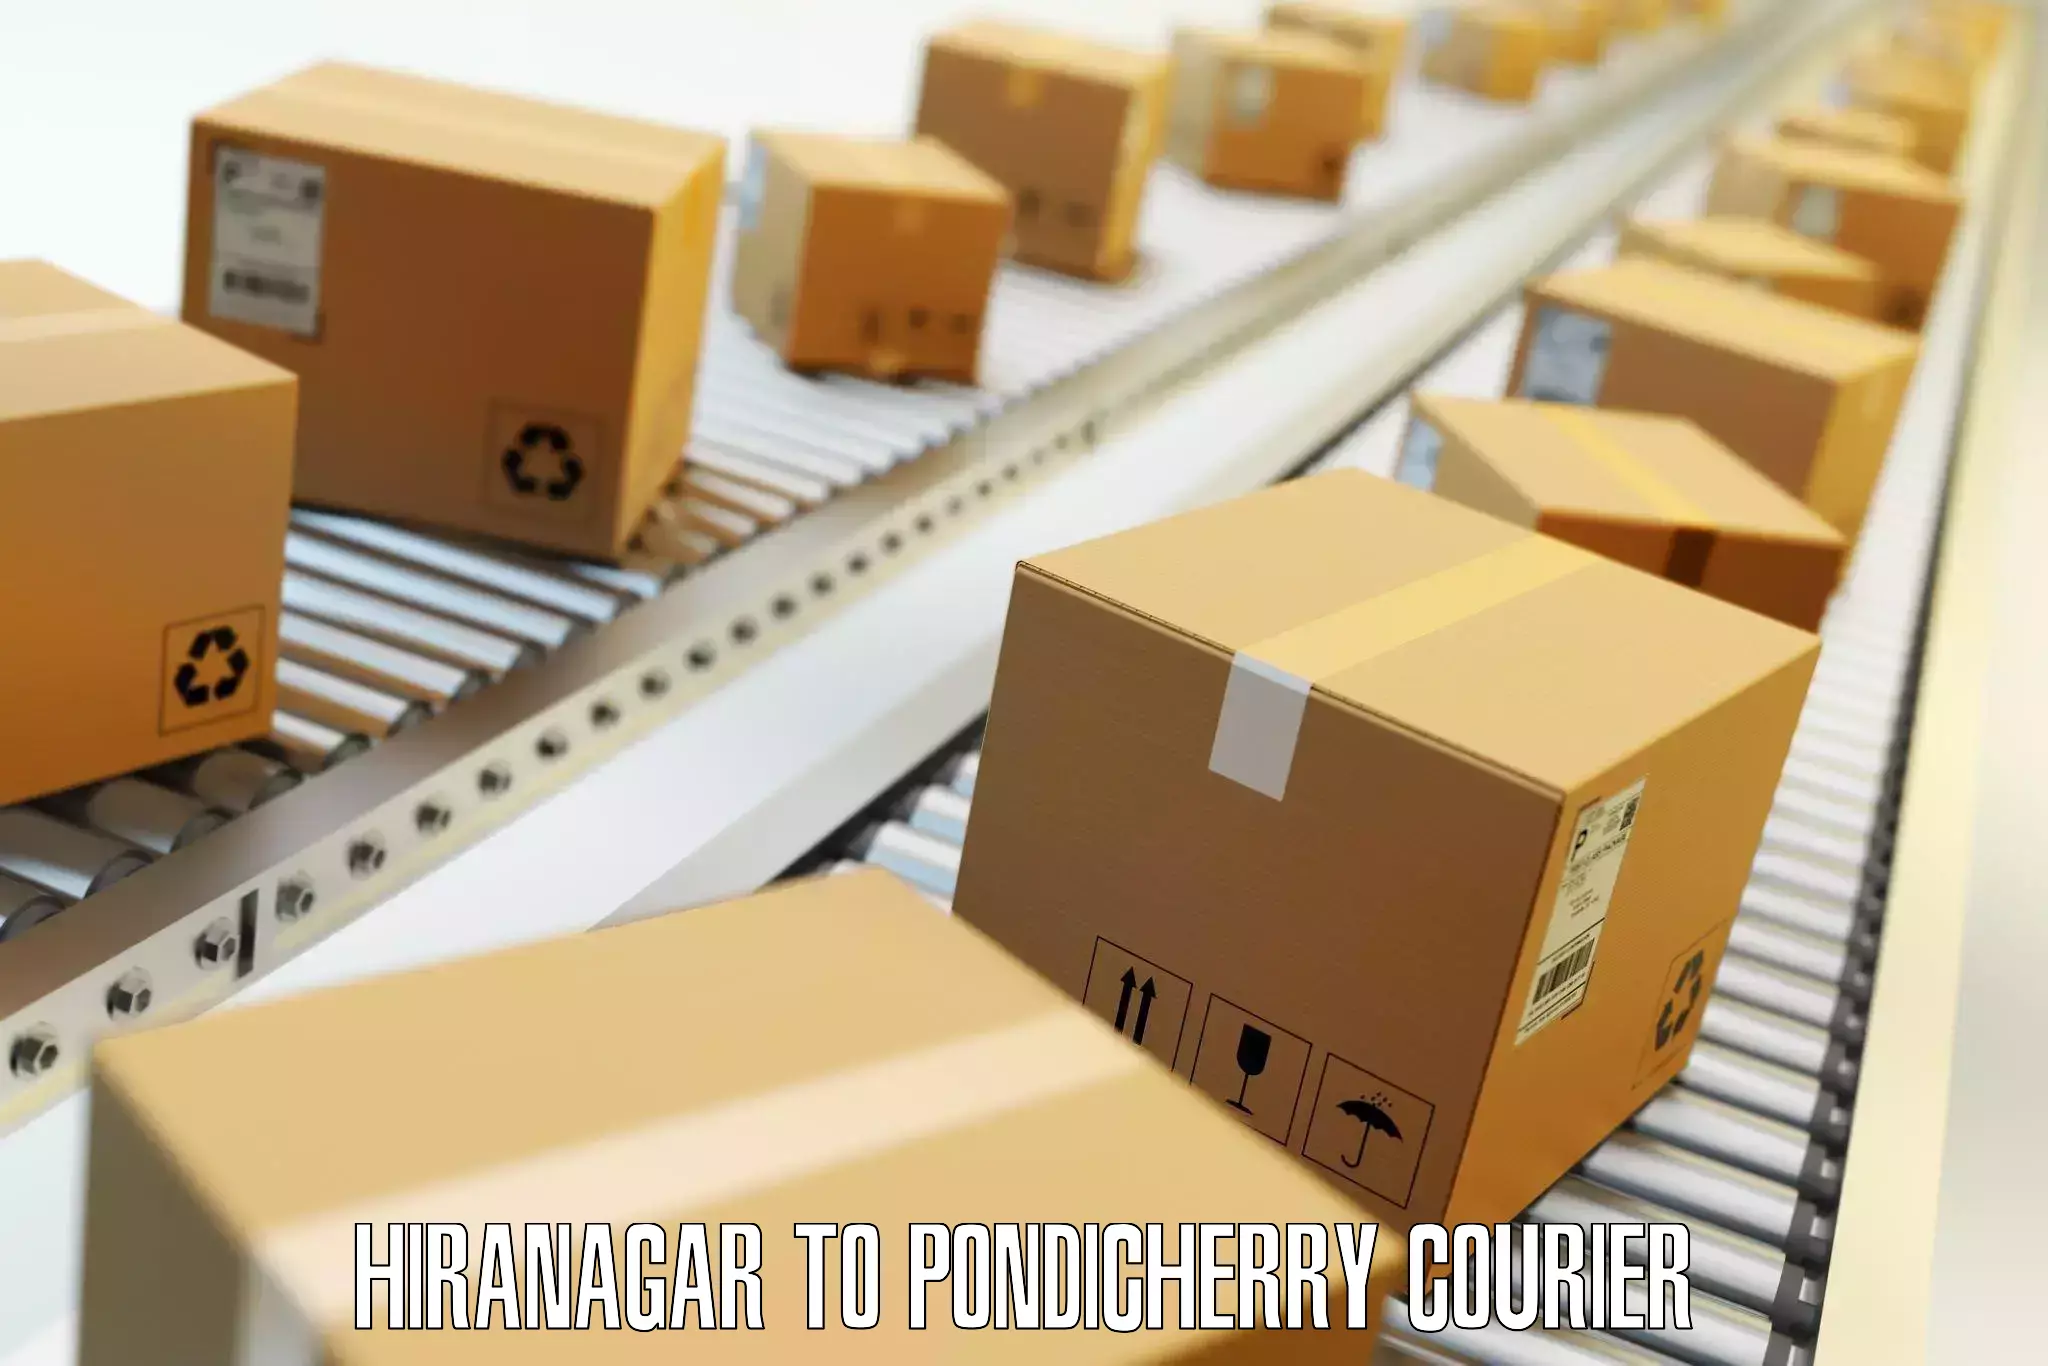 Luggage dispatch service Hiranagar to Pondicherry University